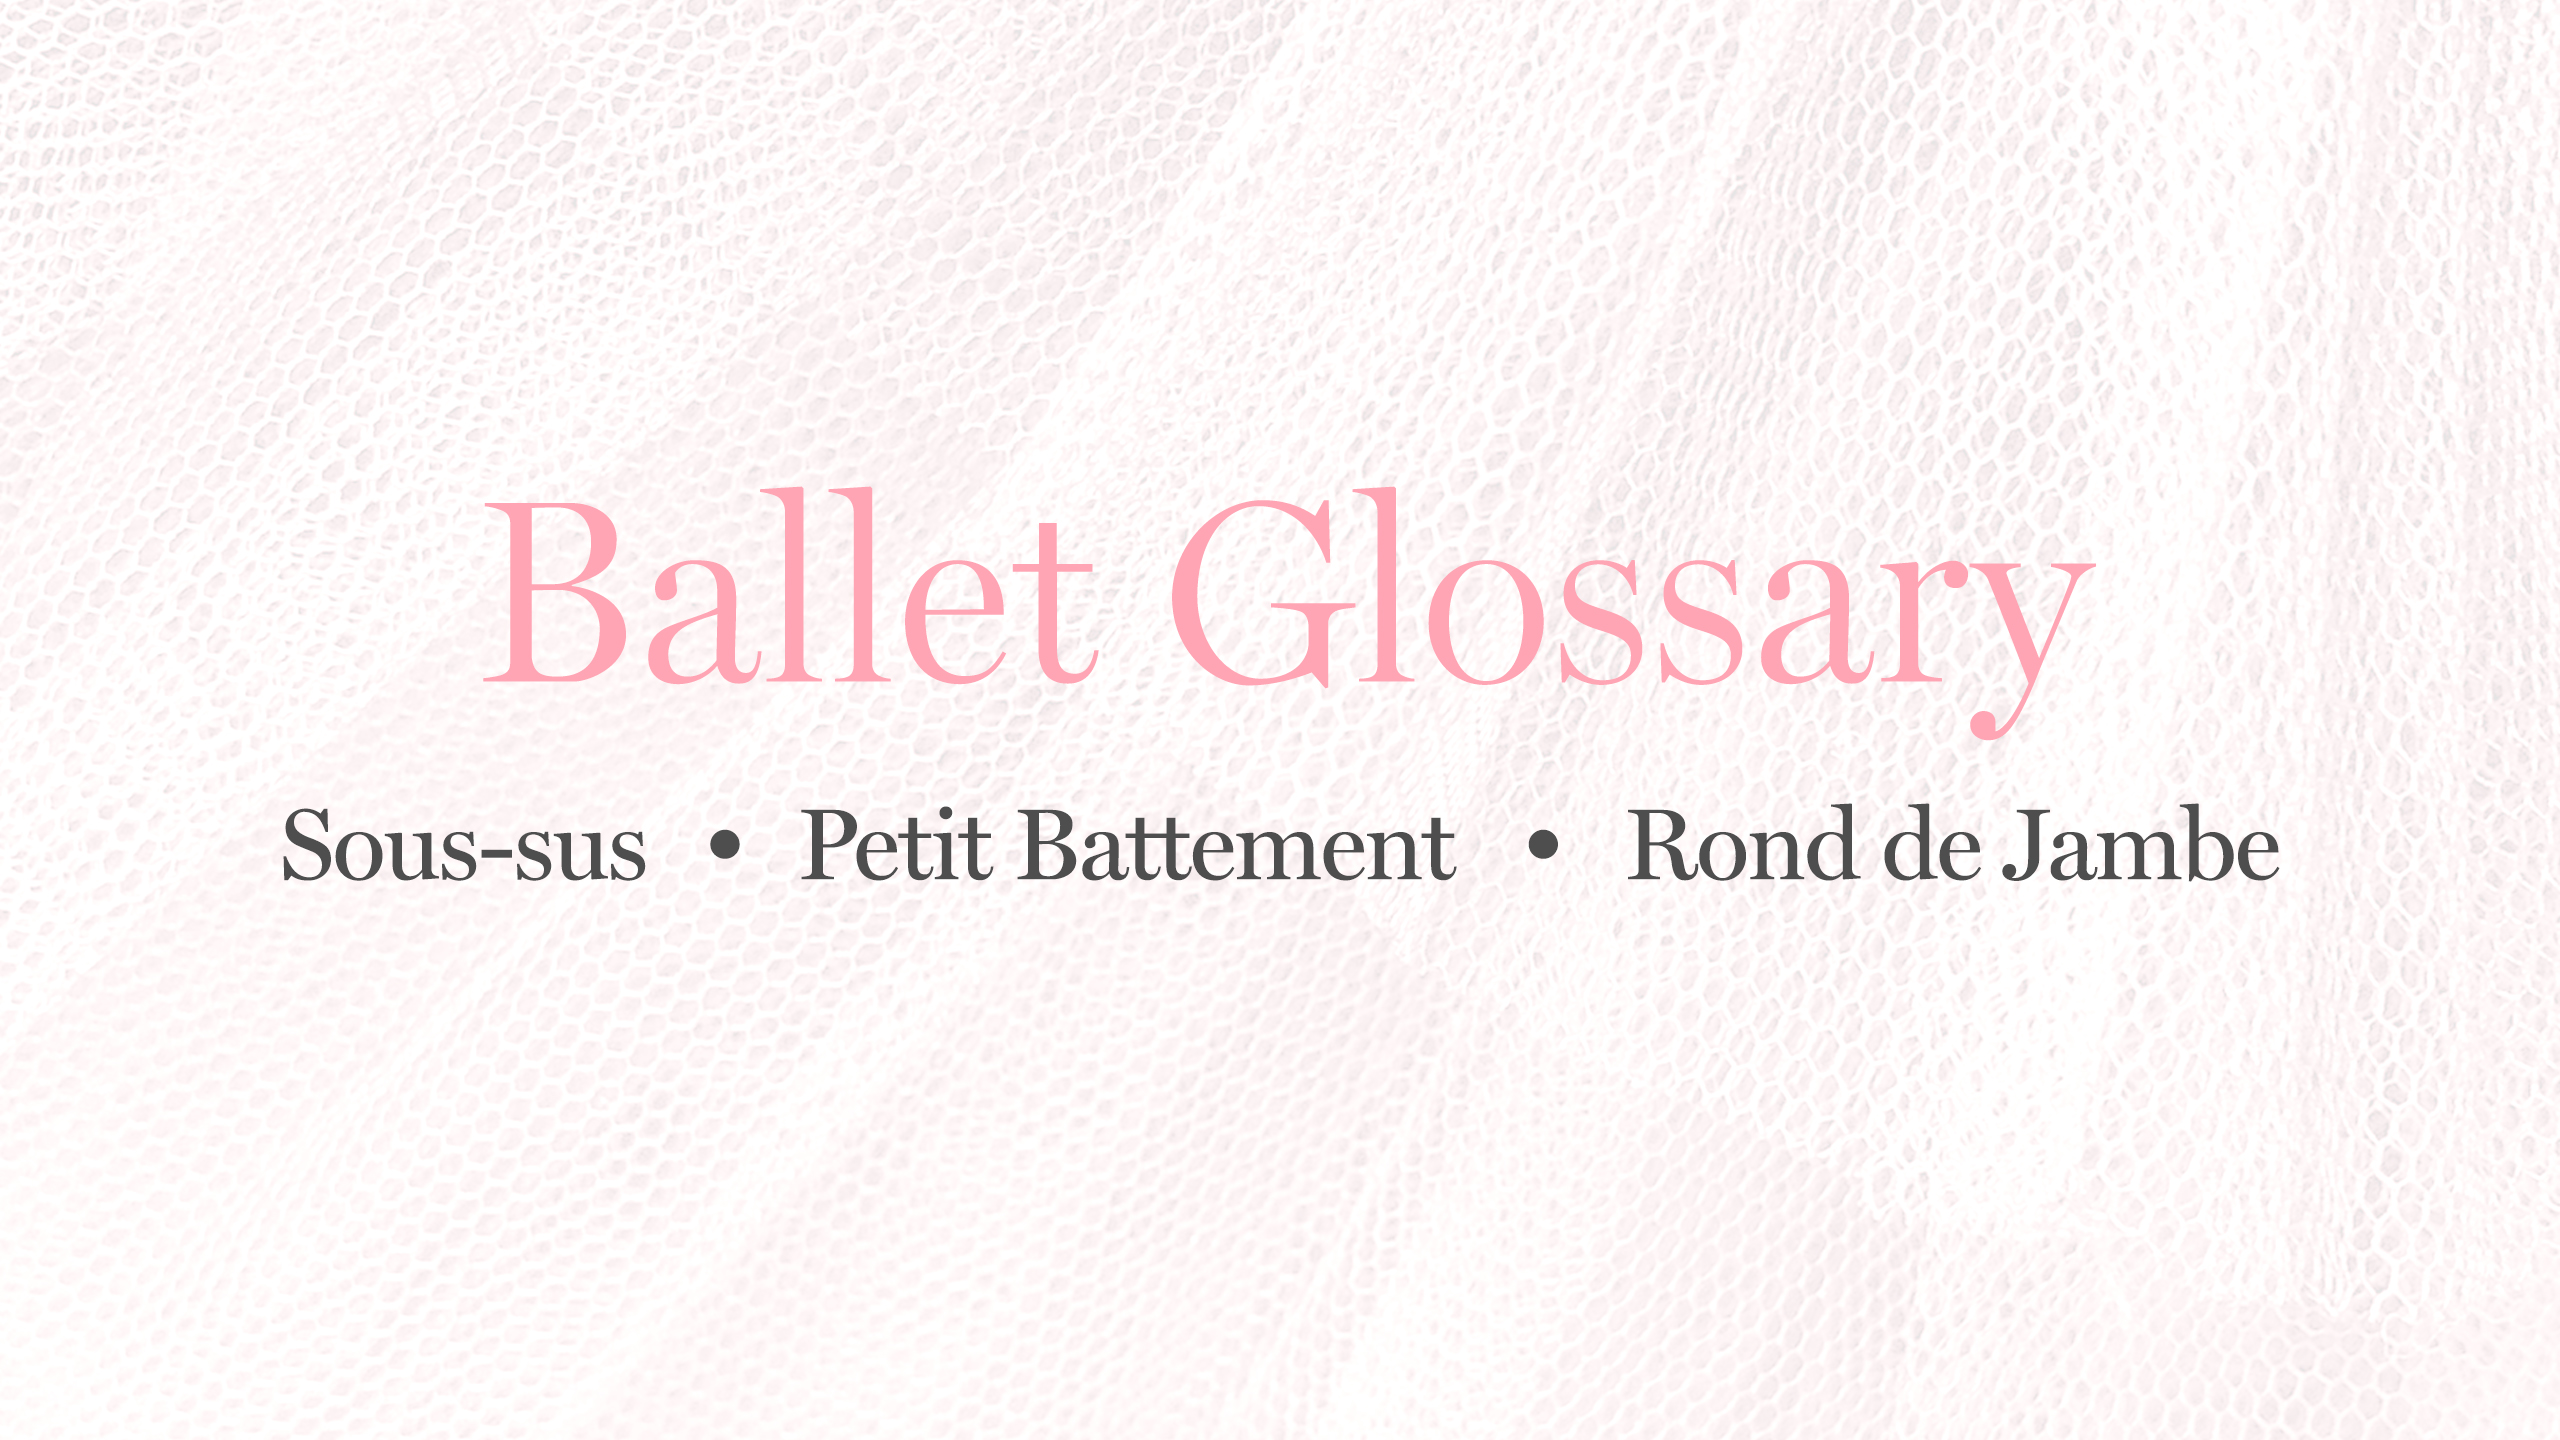 Ballet Glossary: Sous-sus, Petit Battement, Rond de Jambe